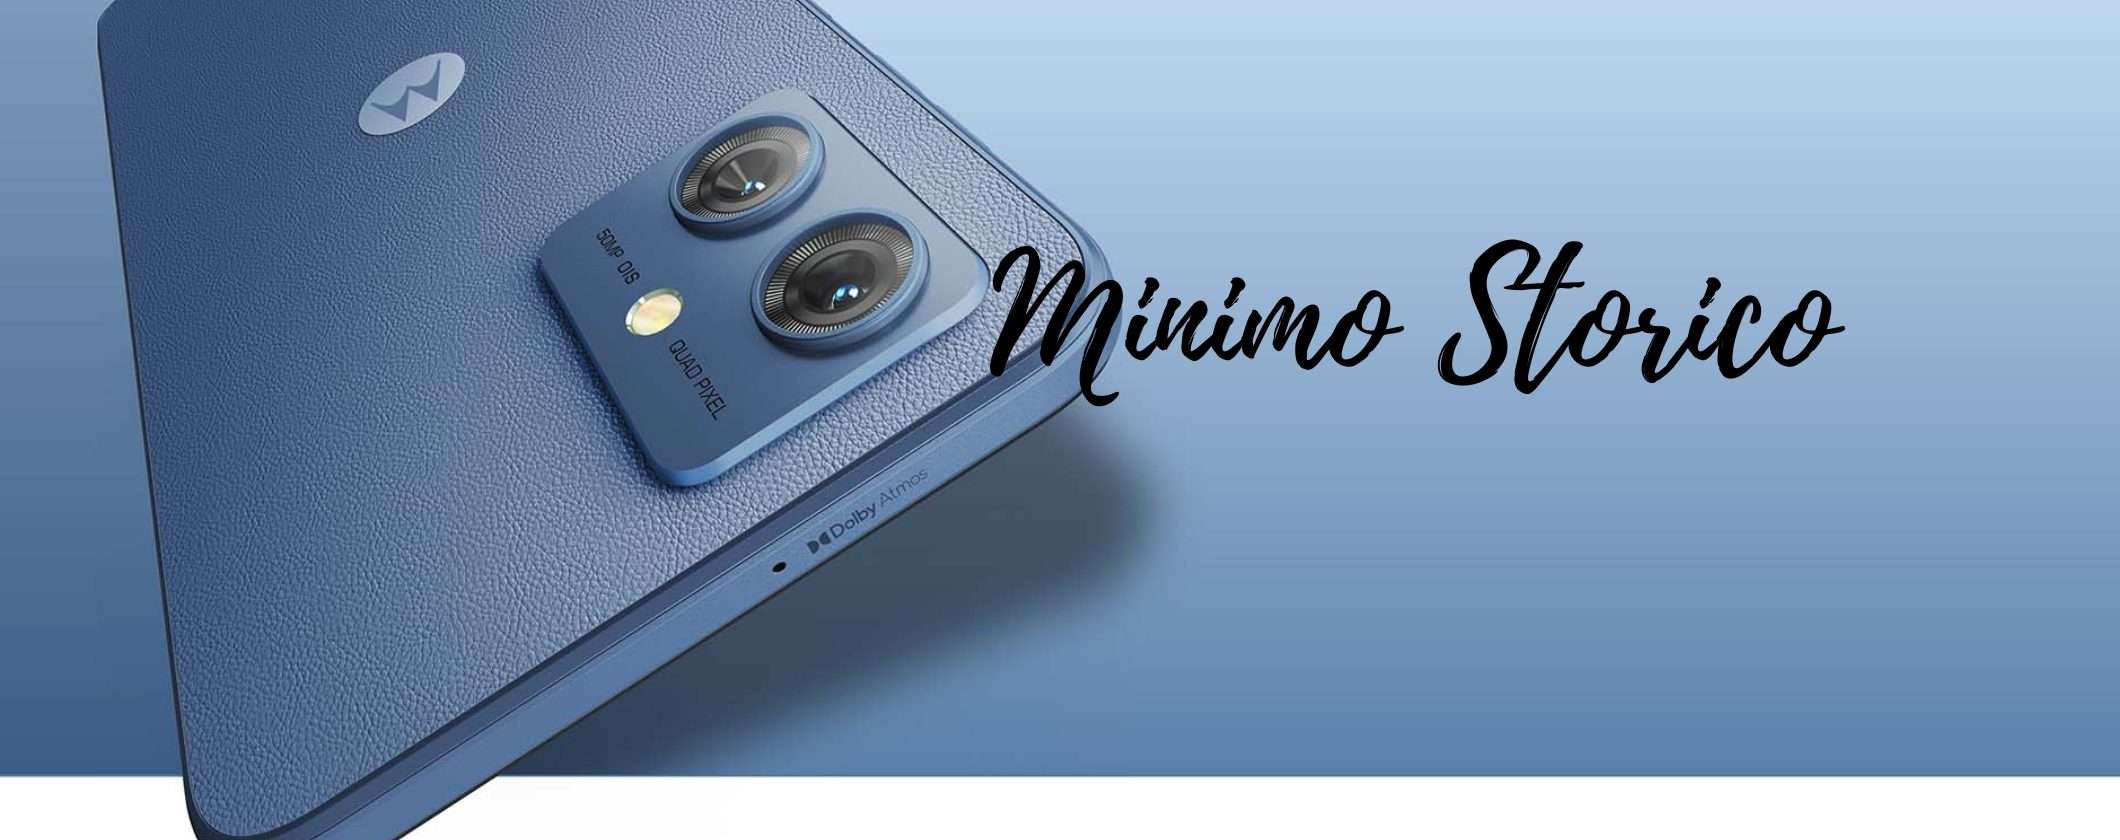 Motorola moto g54: il camerafonino al MINIMO STORICO su eBay